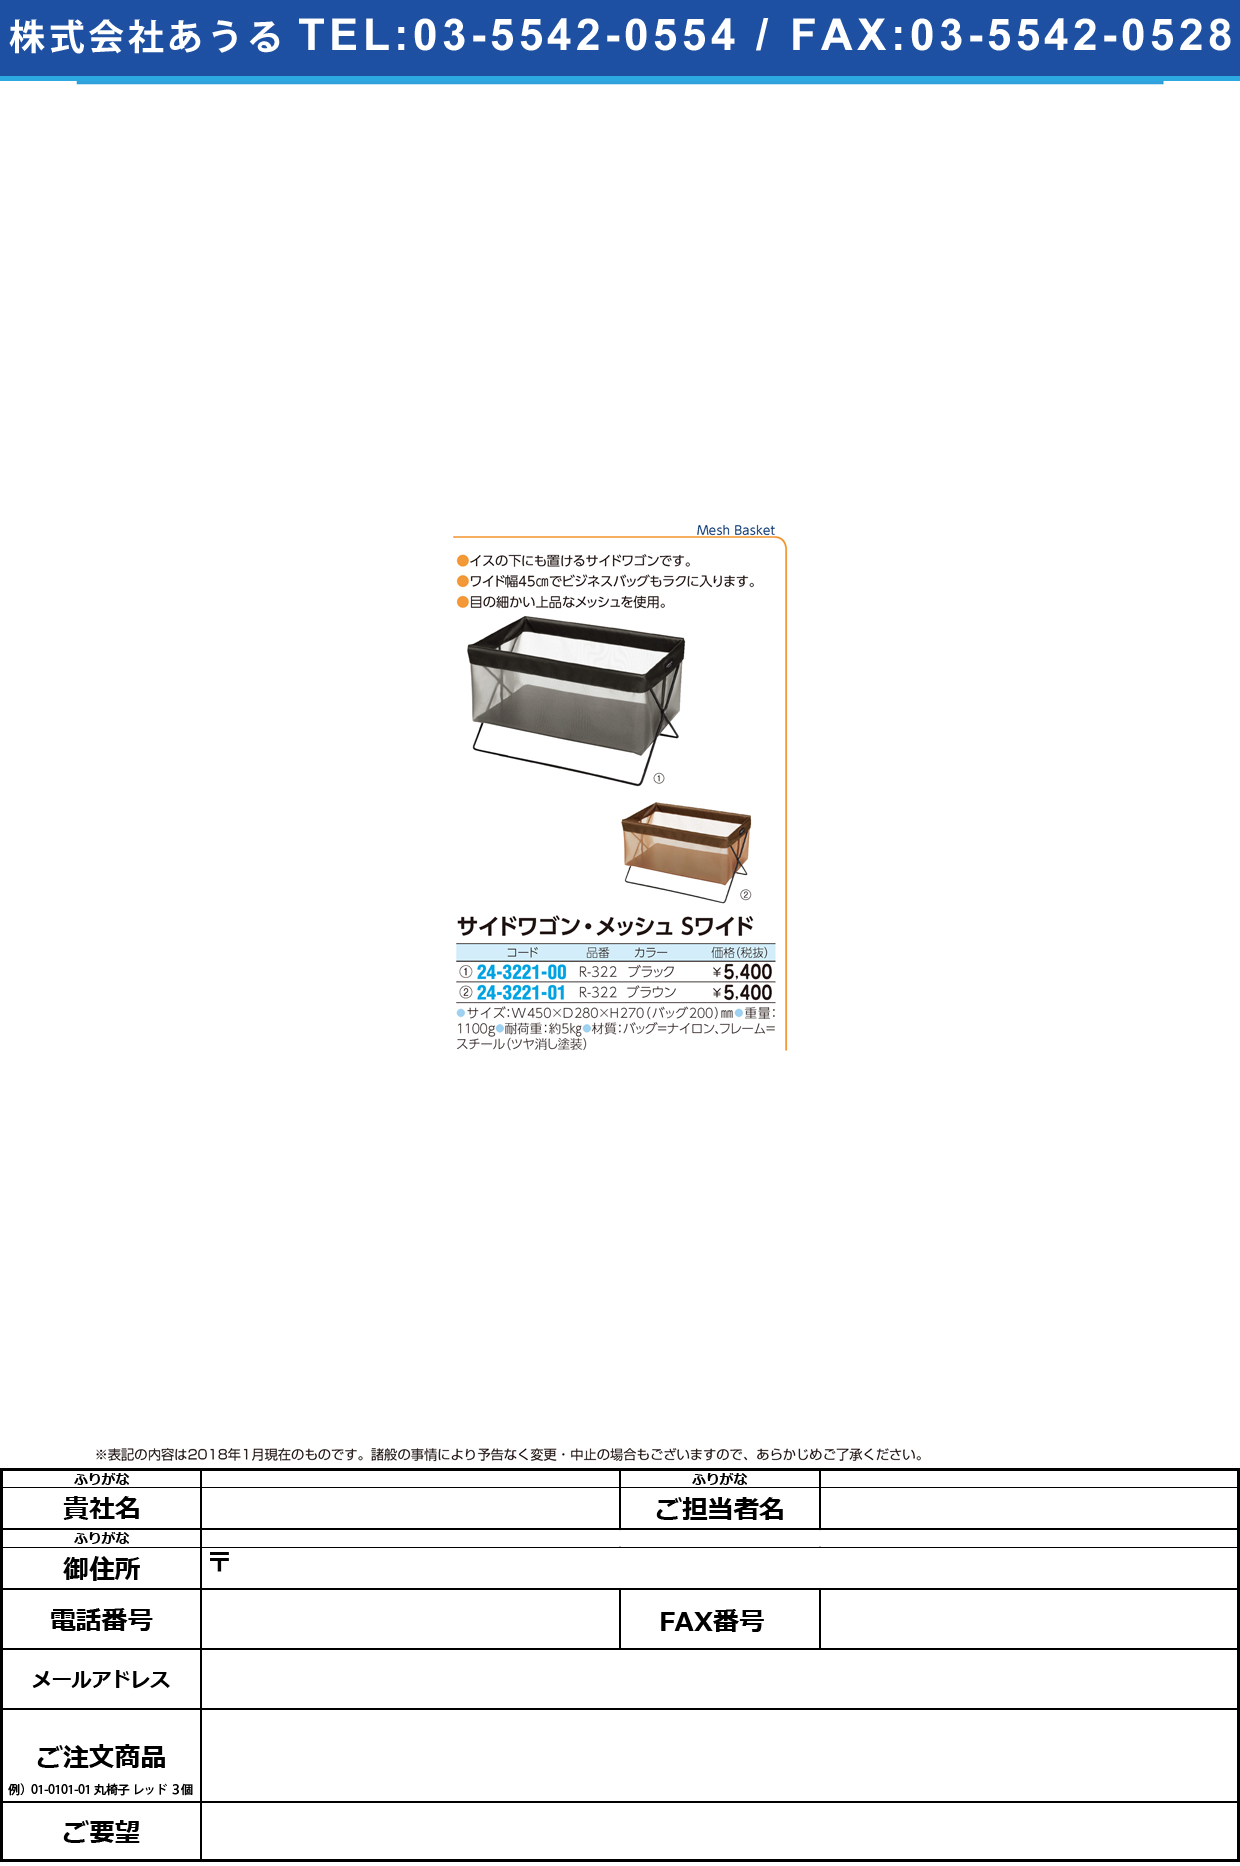 (24-3221-00)サイドワゴン・メッシュＳワイド R-322(ﾌﾞﾗｯｸ) ｻｲﾄﾞﾜｺﾞﾝﾒｯｼｭSﾜｲﾄﾞ【1個単位】【2018年カタログ商品】